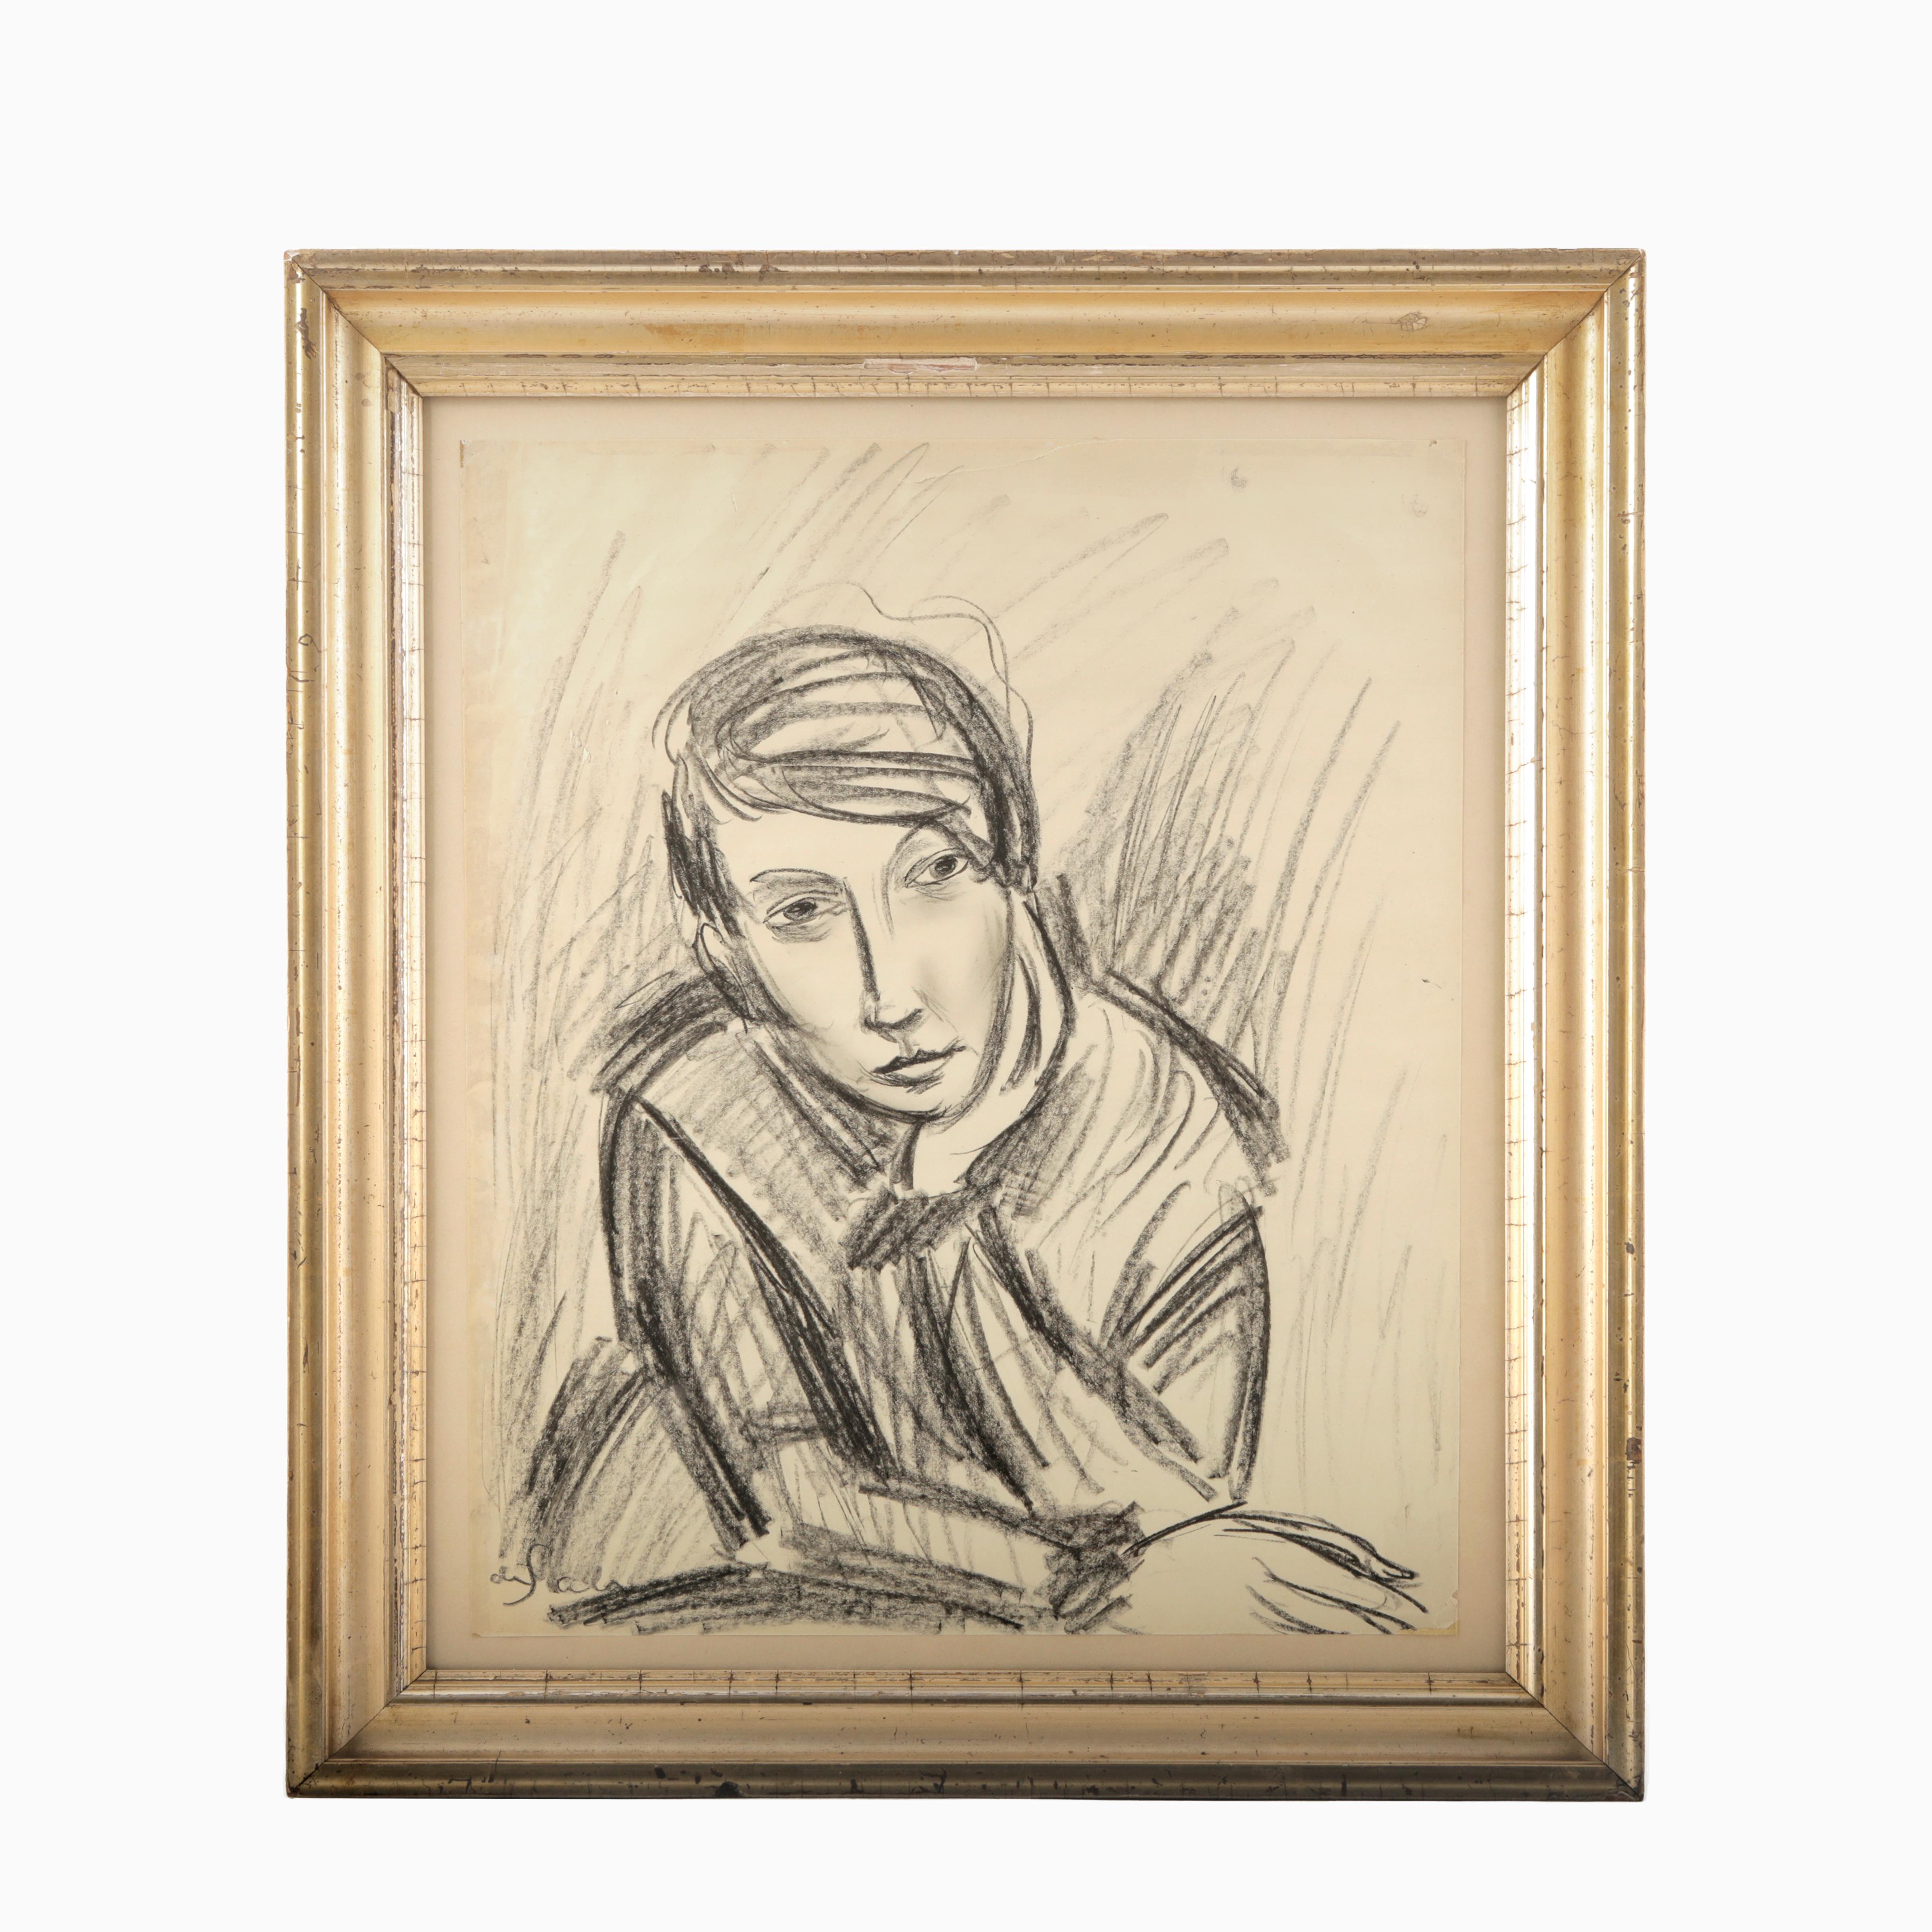 Eugène de Sala, 1899 - 1987.
Kohlezeichnung auf Papier, Porträt seiner Frau, 1920er Jahre.
Eugène de Sala, ein Avantgarde-Maler aus den 1920er Jahren, gilt als einer der ersten, der den Surrealismus in Dänemark einführte.

gerahmt in einem schönen